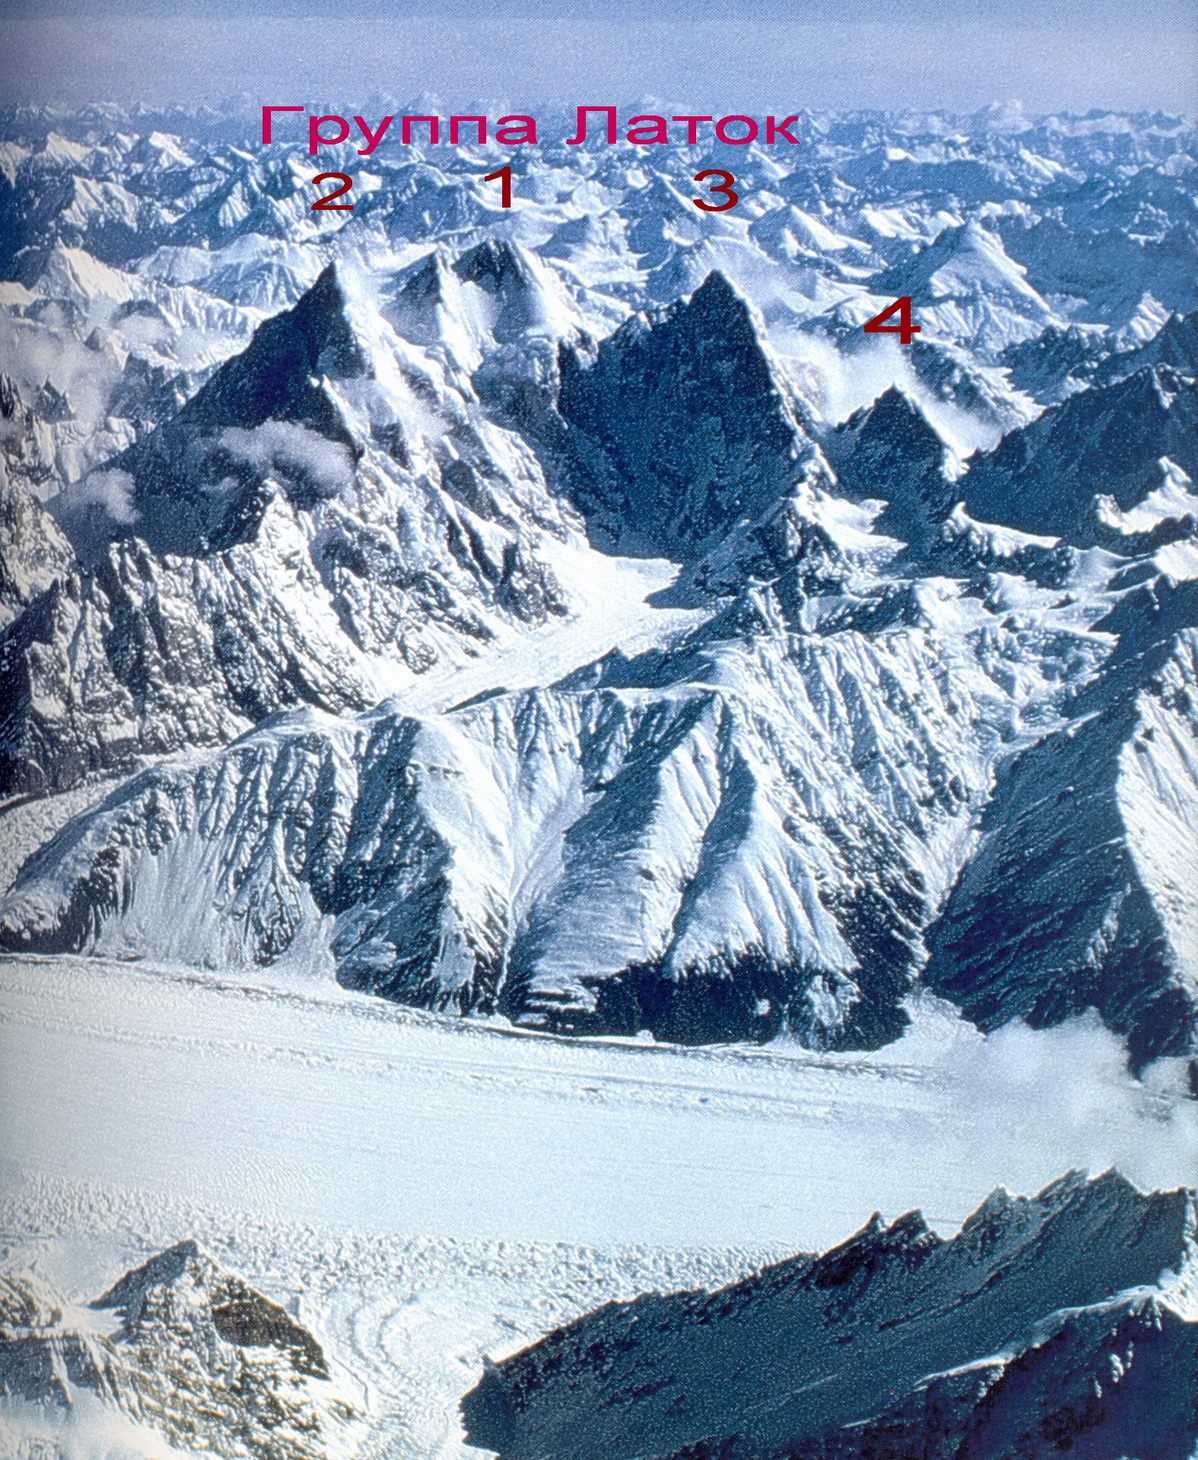 Горная группа Латок:Латок 1 - 7145 метров, Латок 2 - 7108 метров, Латок 3 - 6940 метров, Латок 4 - 6456 метров 